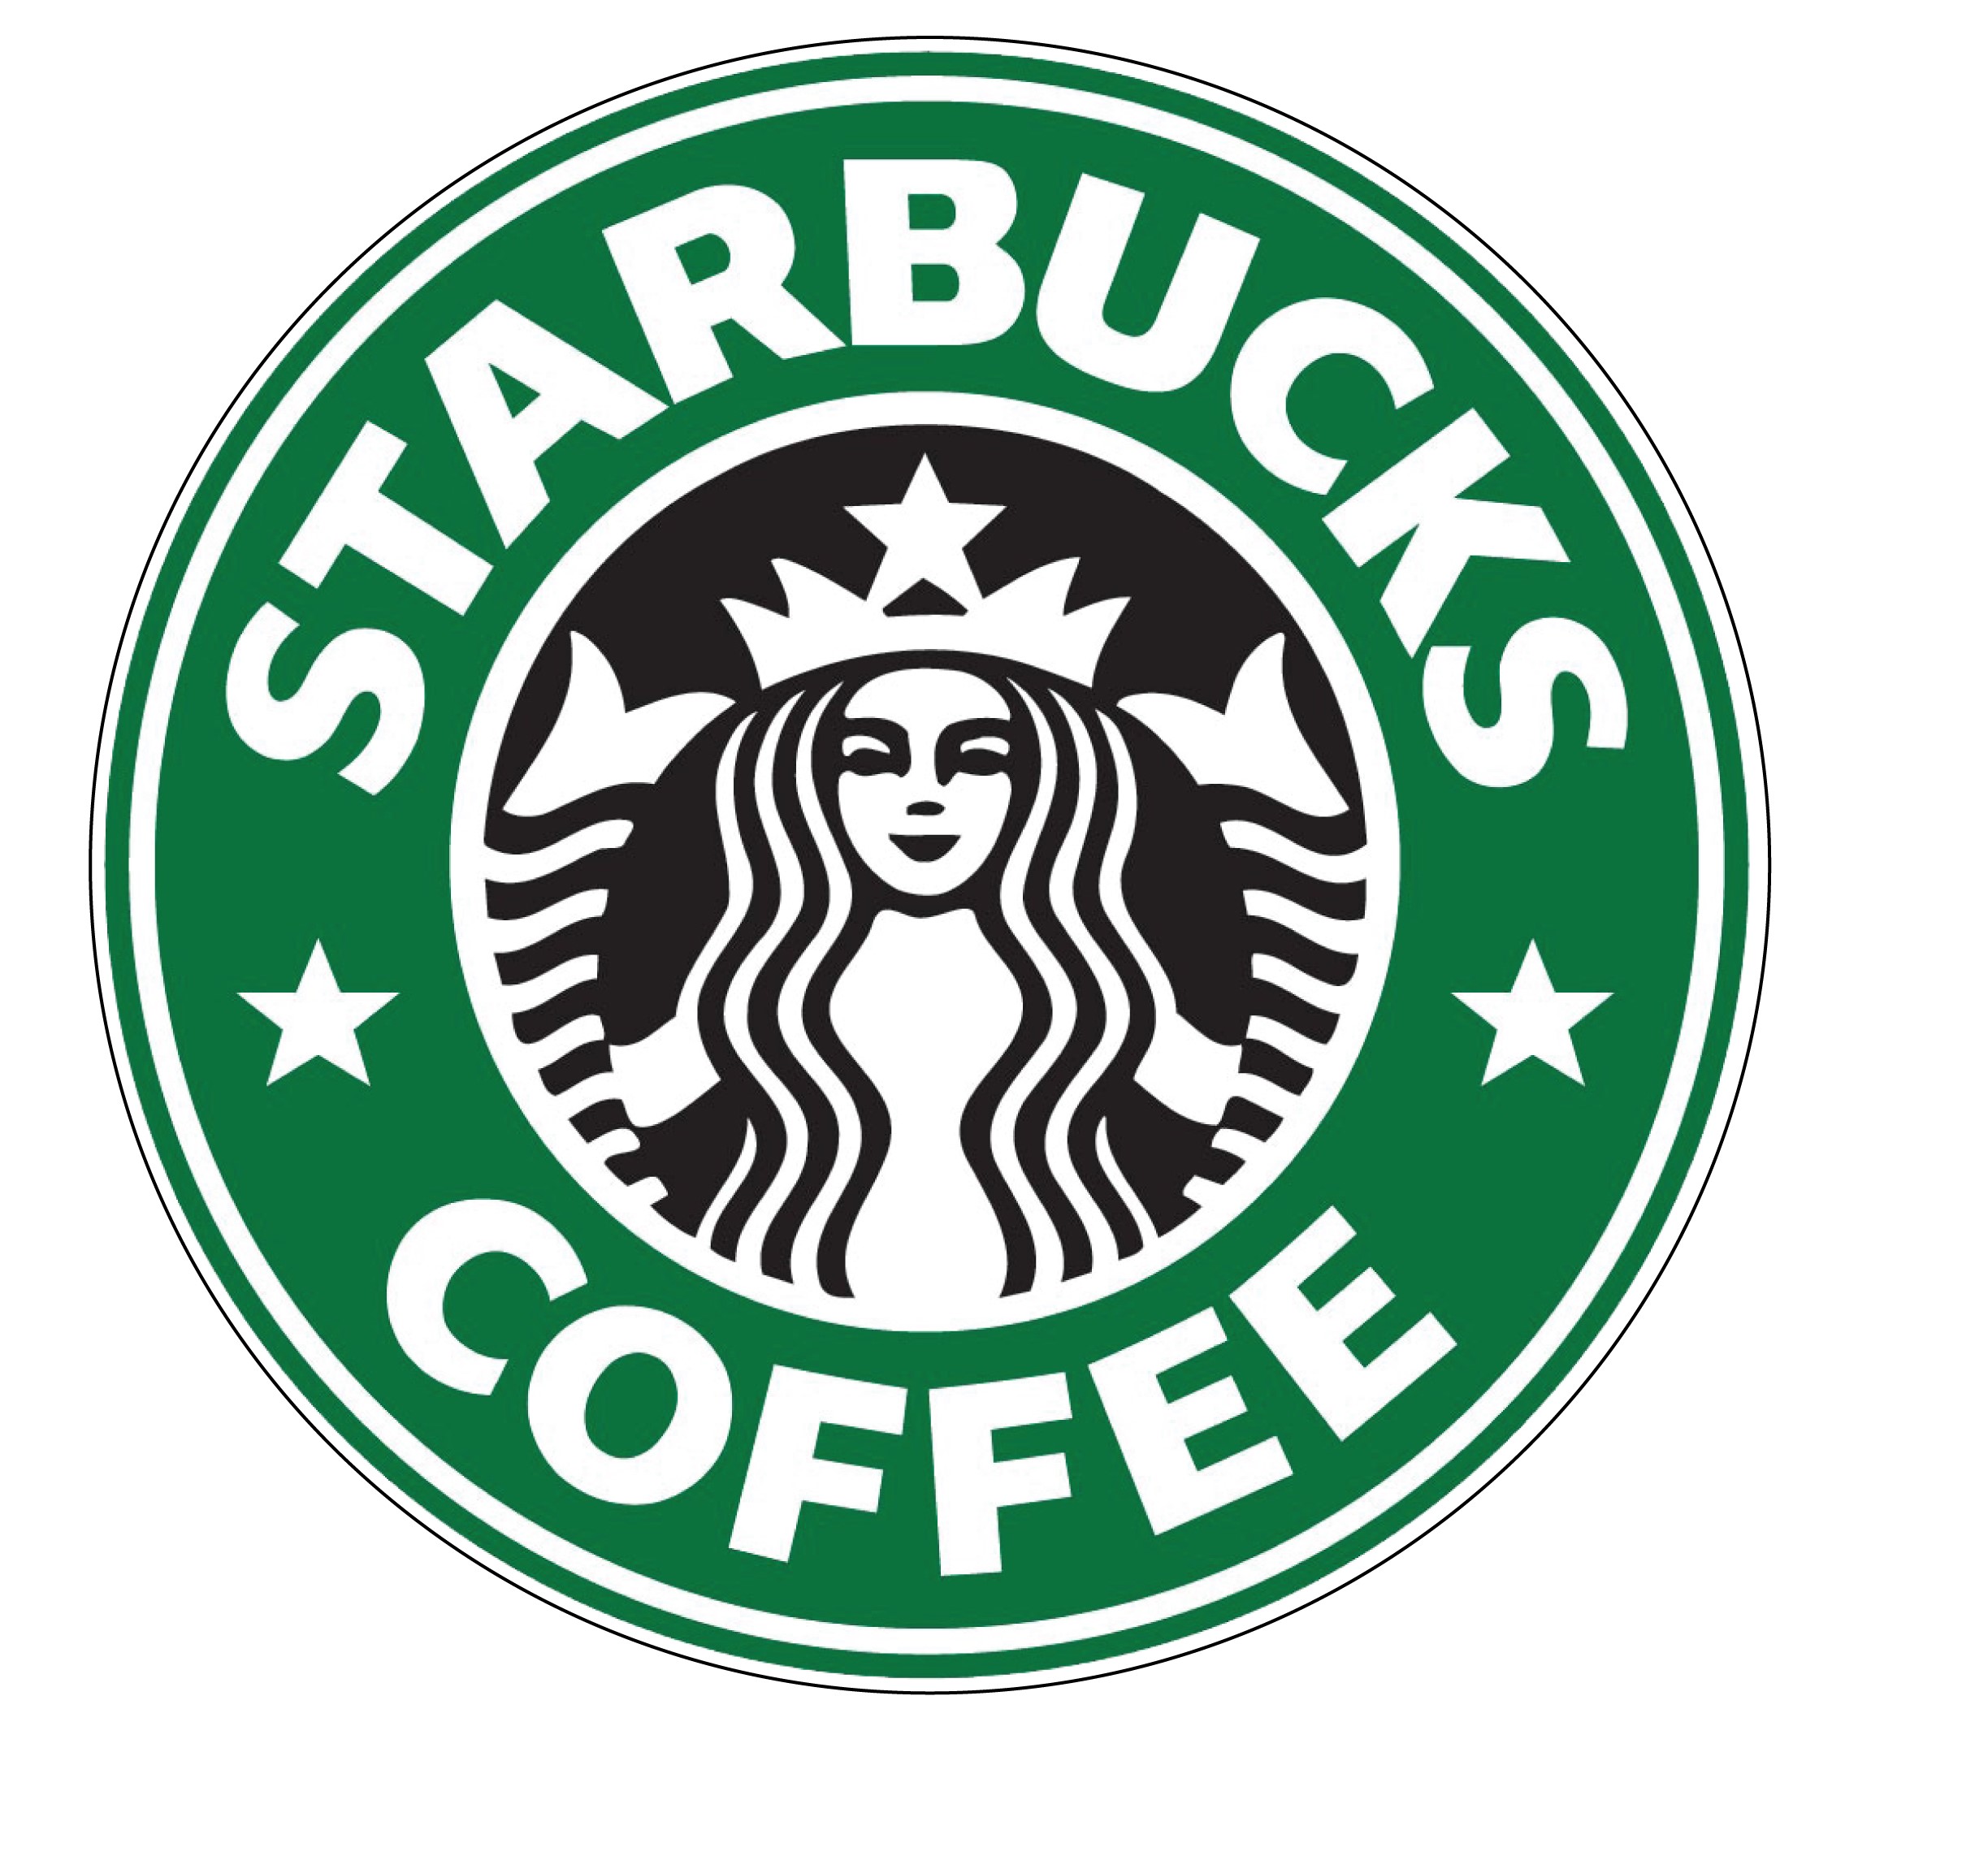 https://anysigns.ca/wp-content/uploads/Starbucks-Coffee-Logo.jpg